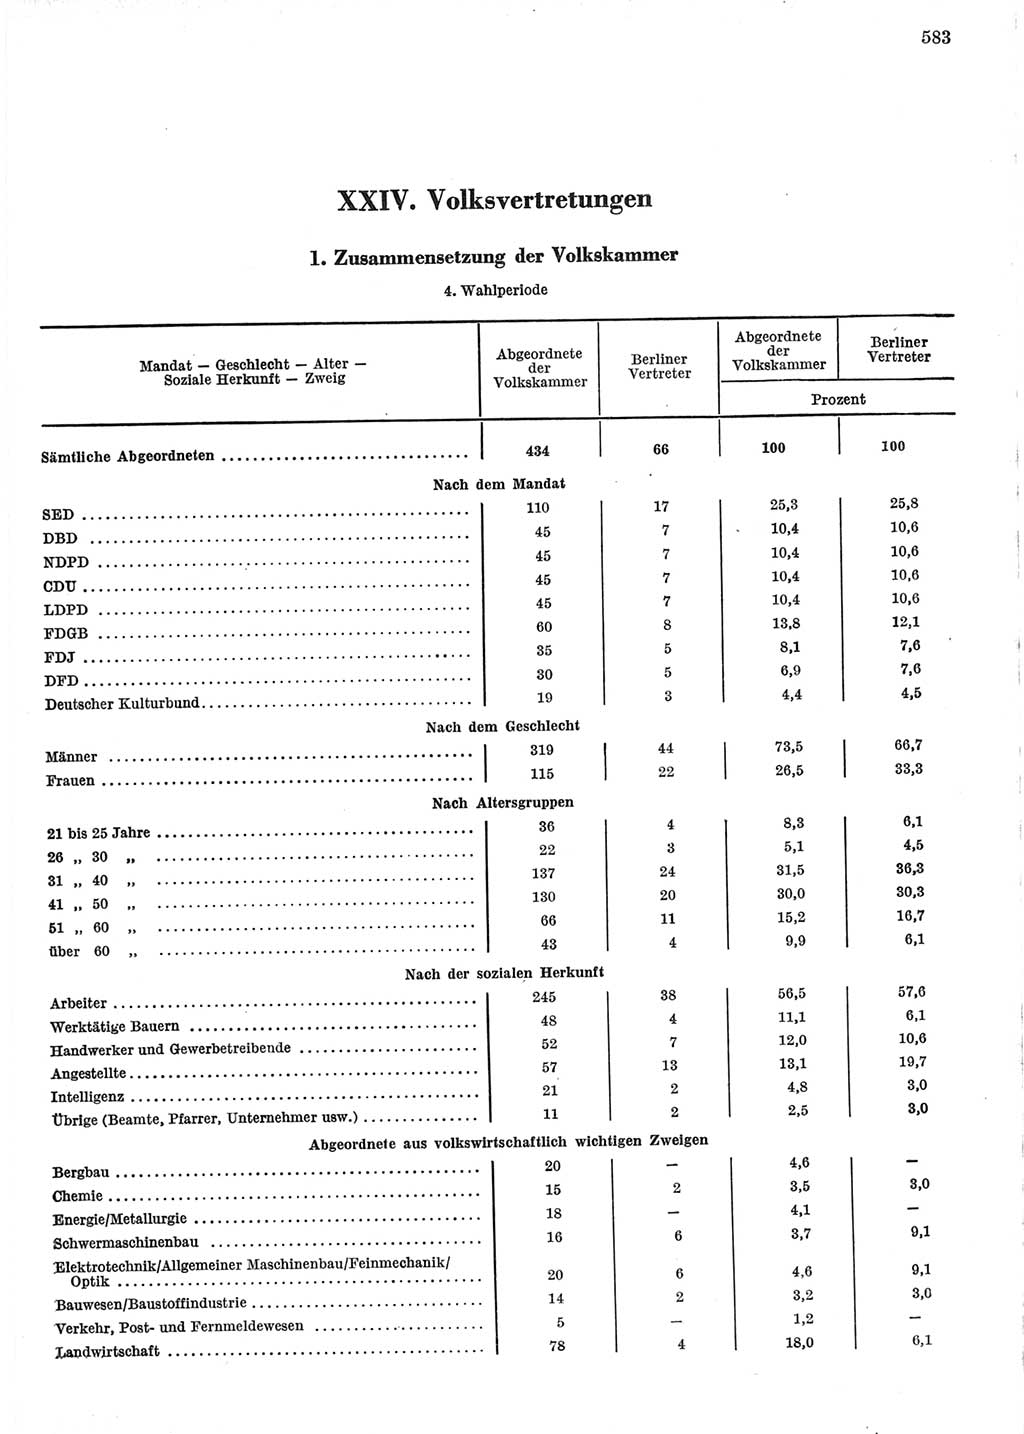 Statistisches Jahrbuch der Deutschen Demokratischen Republik (DDR) 1967, Seite 583 (Stat. Jb. DDR 1967, S. 583)